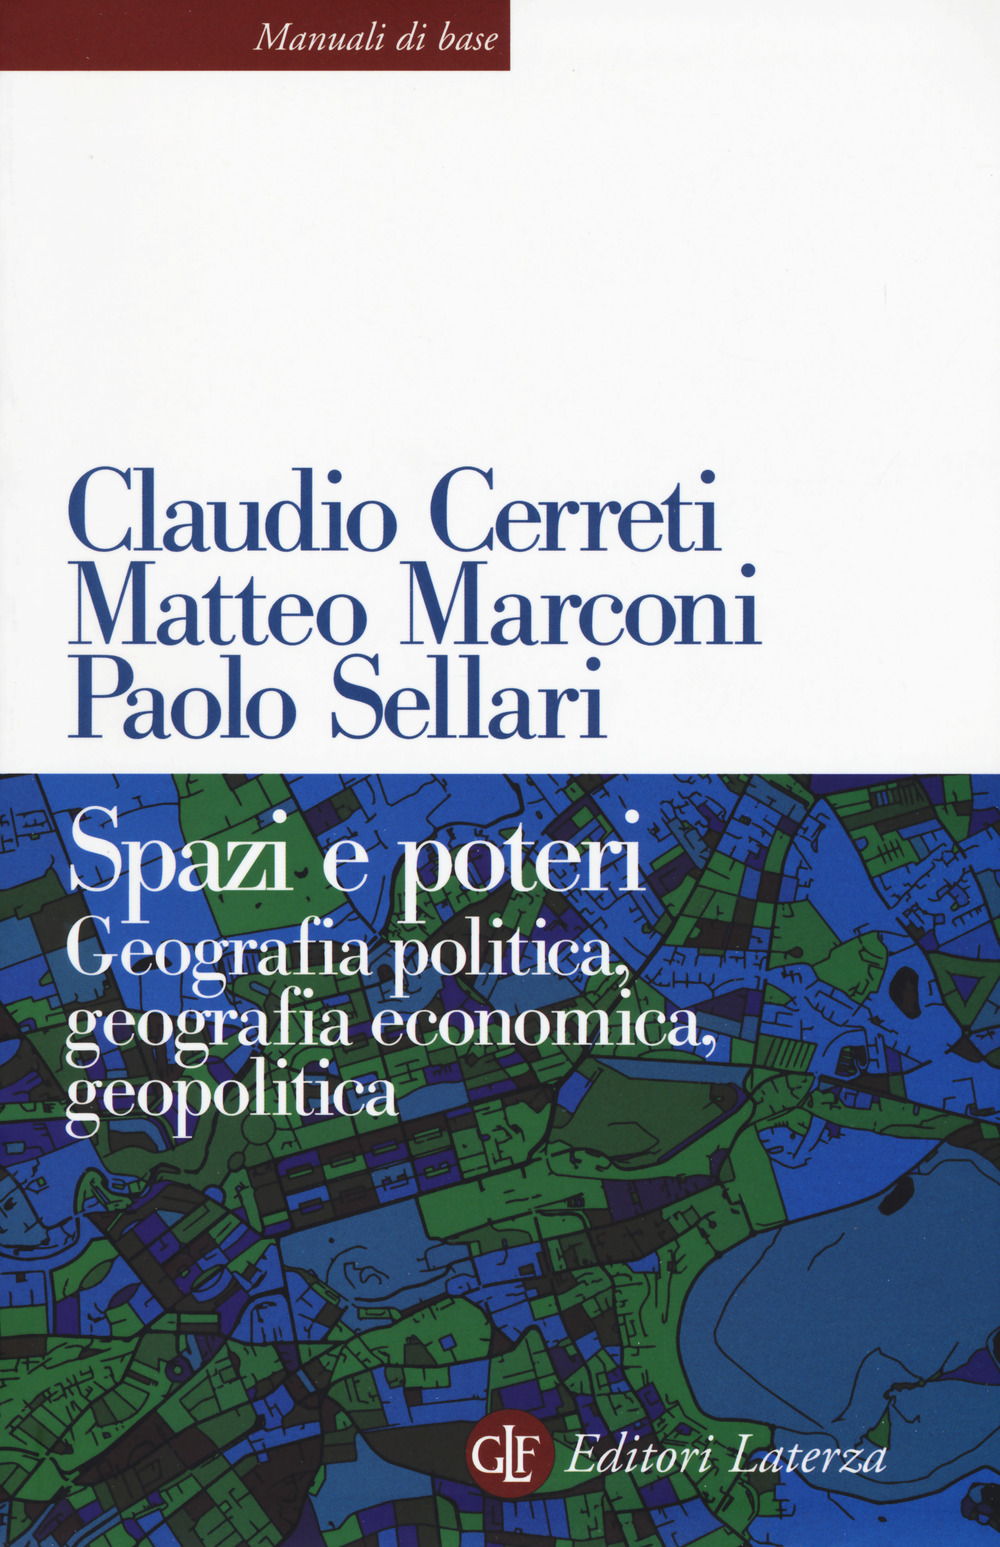 Image of Manuale di geografia politica ed economica